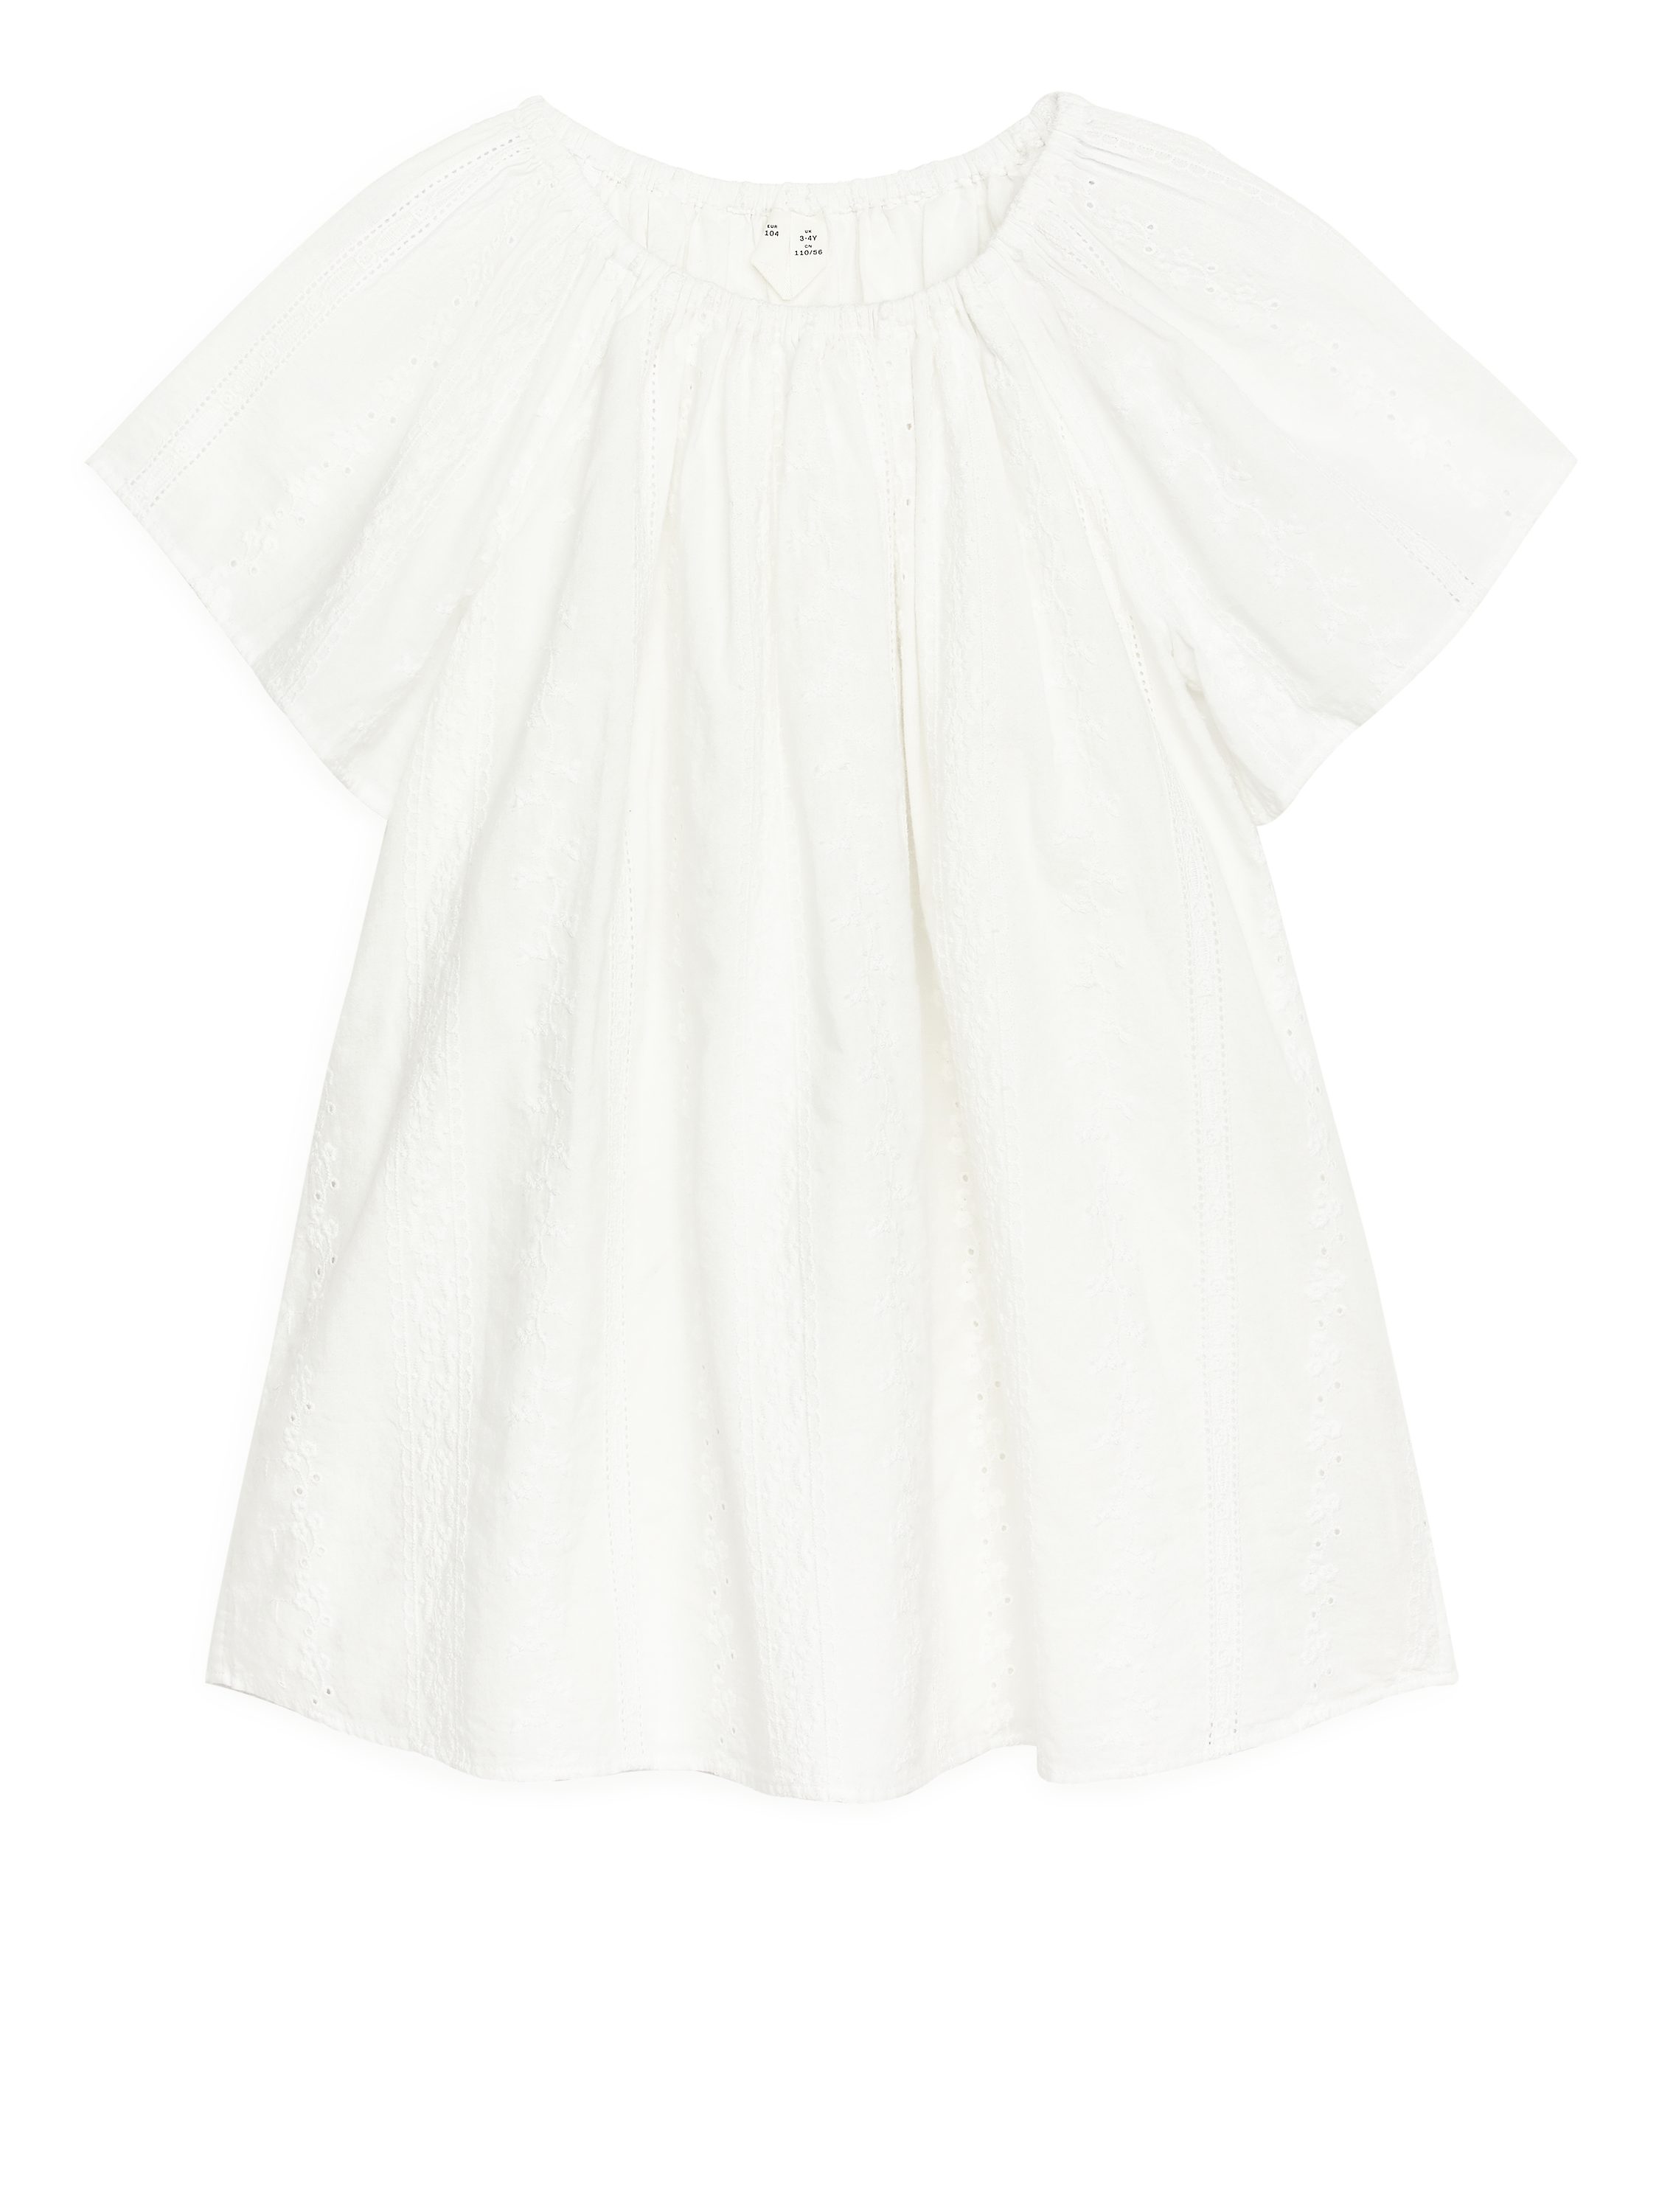 Billede af Arket Embroidered Cotton Dress White, Kjoler I størrelse 122